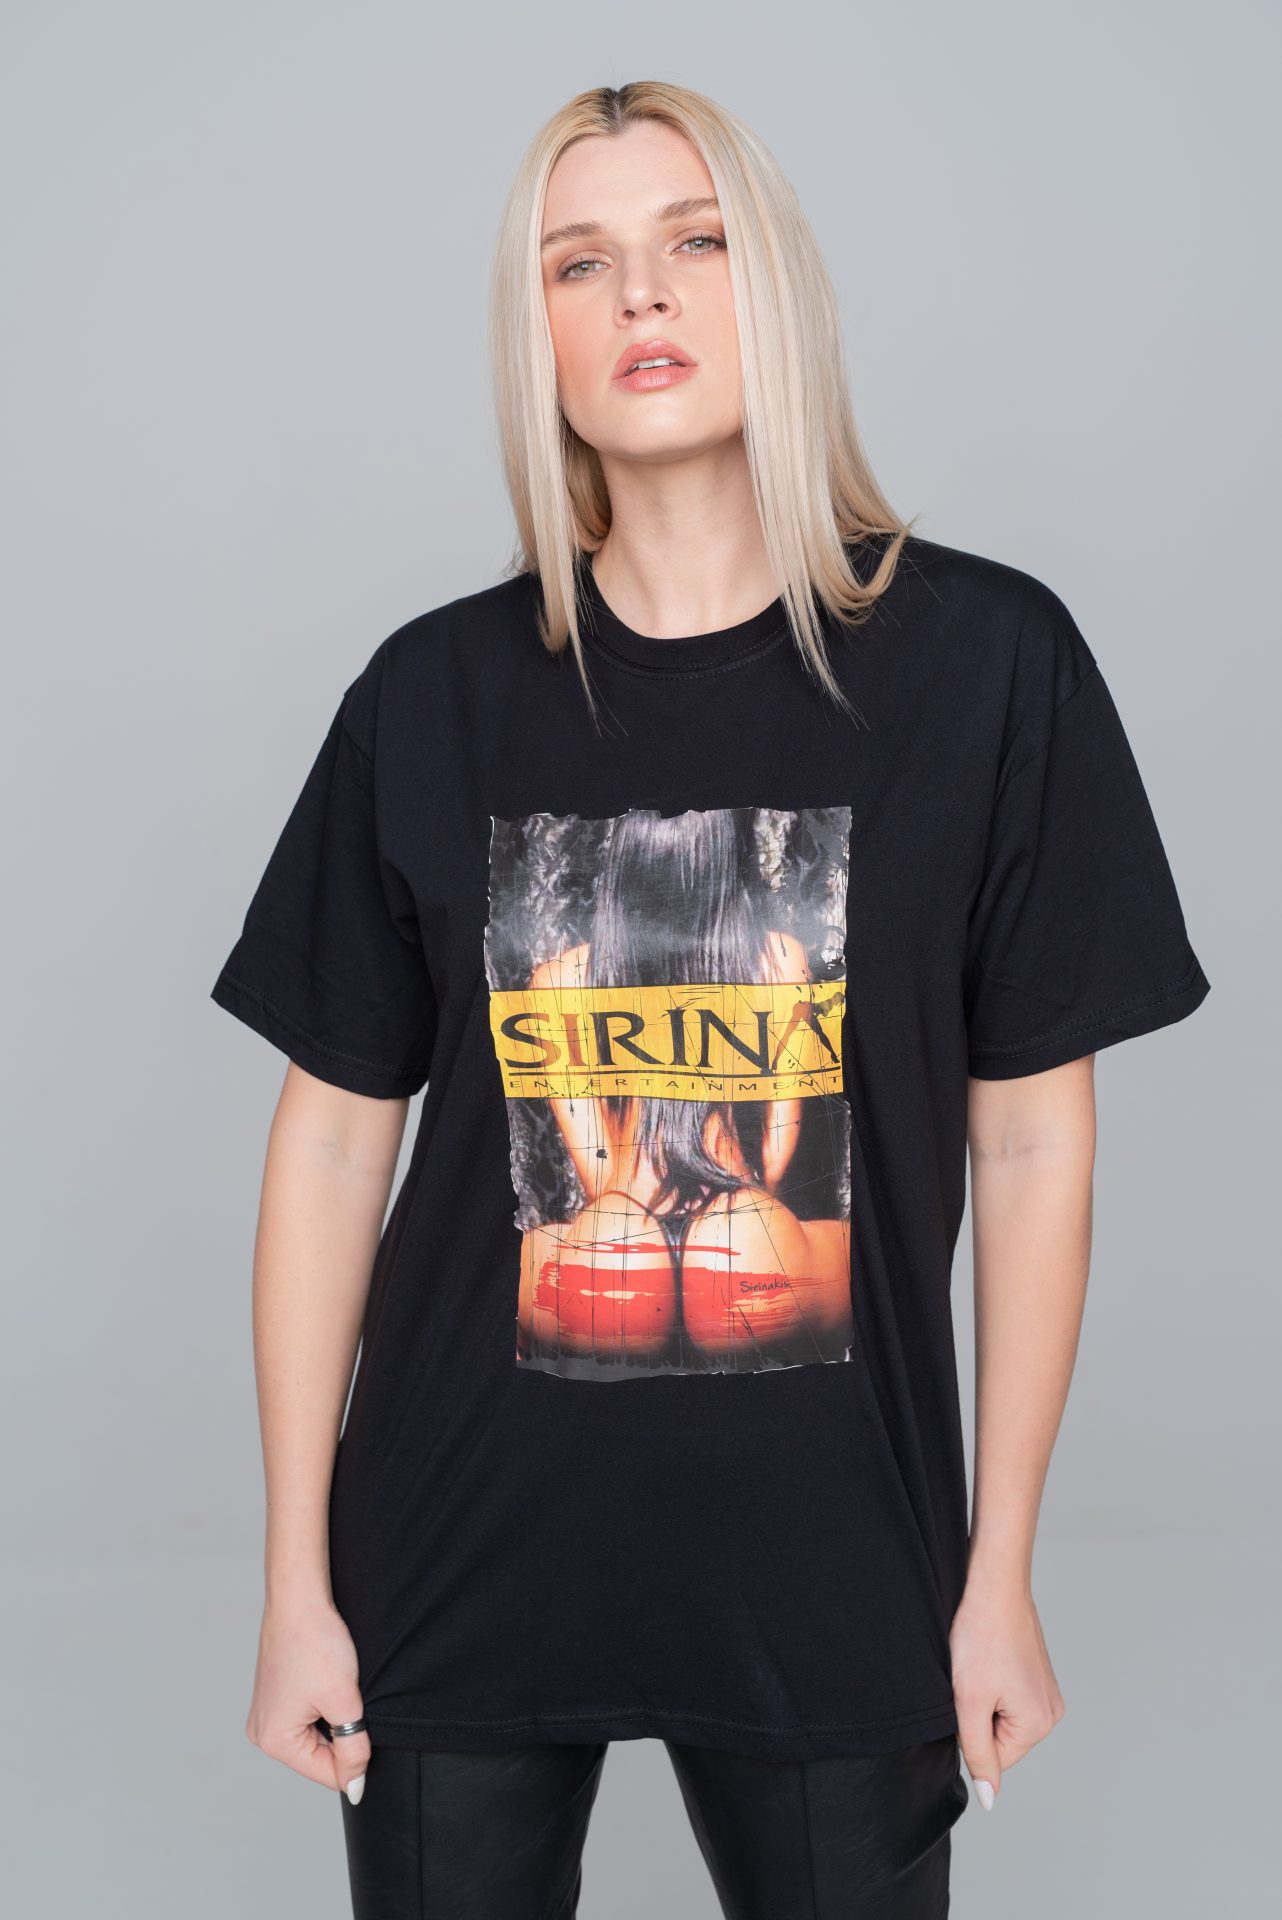 Sirina T Shirt Black Sirina Shop